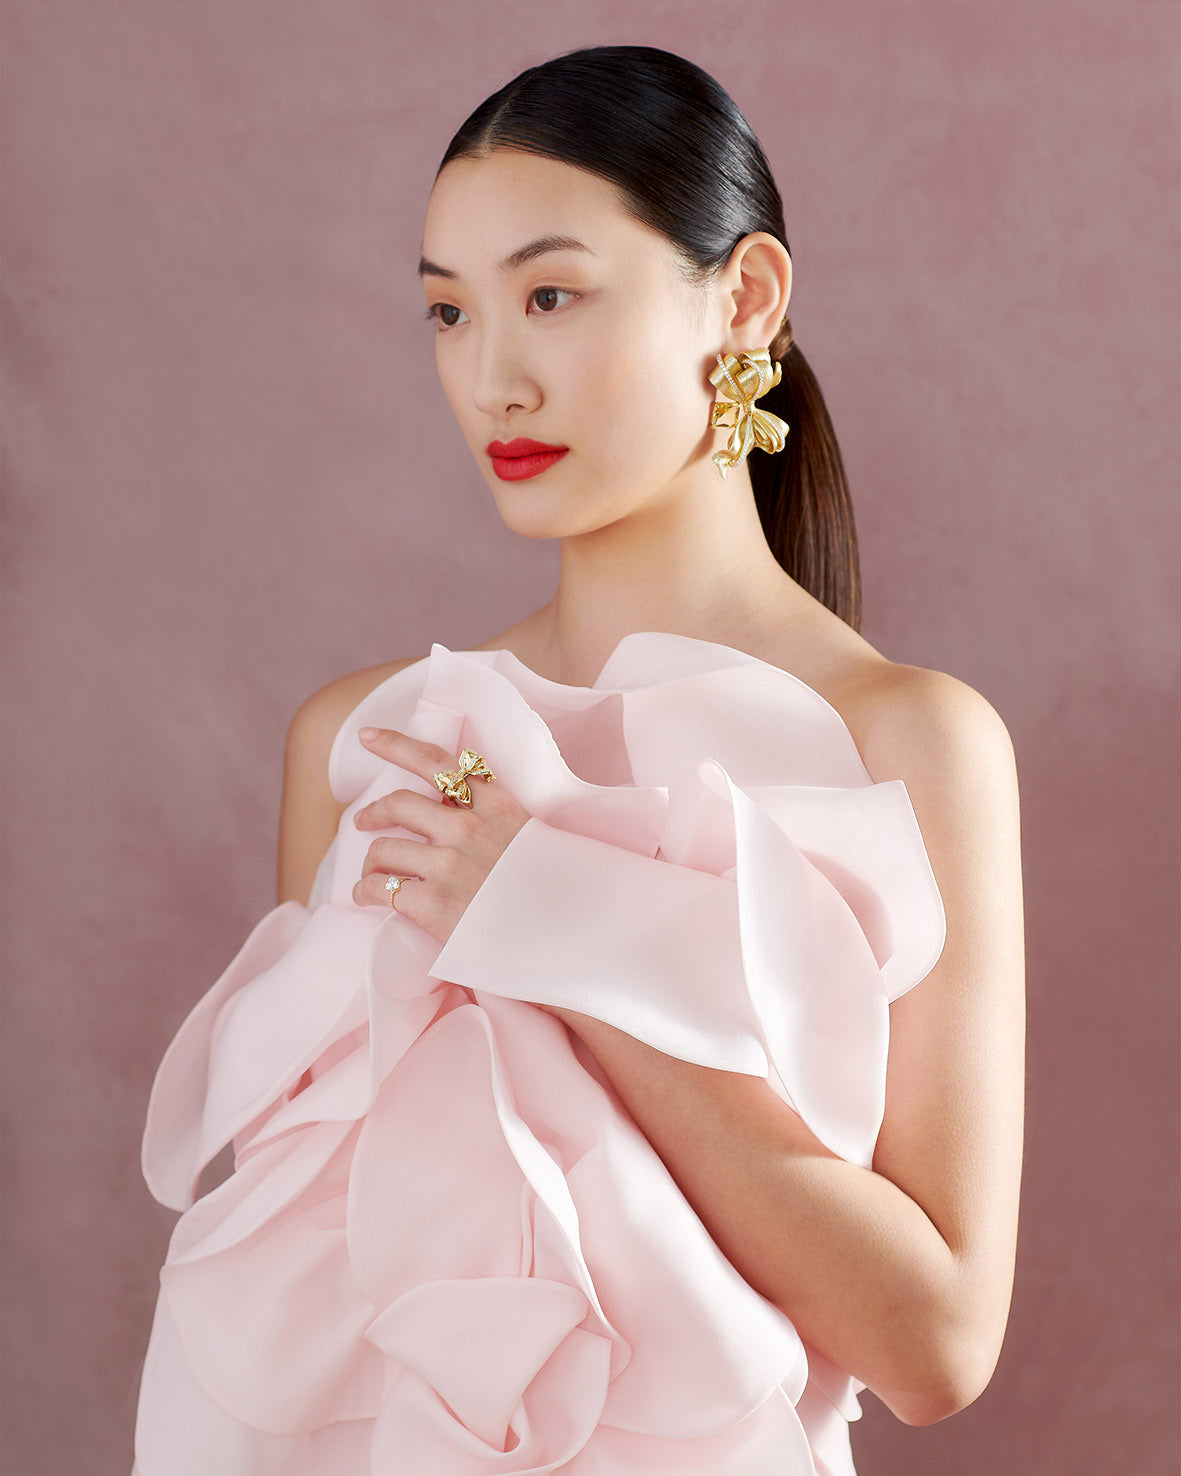 Anabela Chan Joaillerie_Champagne Antoinette Earrings, Golden Bow & Mini Diamond Heart Rings_Model Campaign Shot